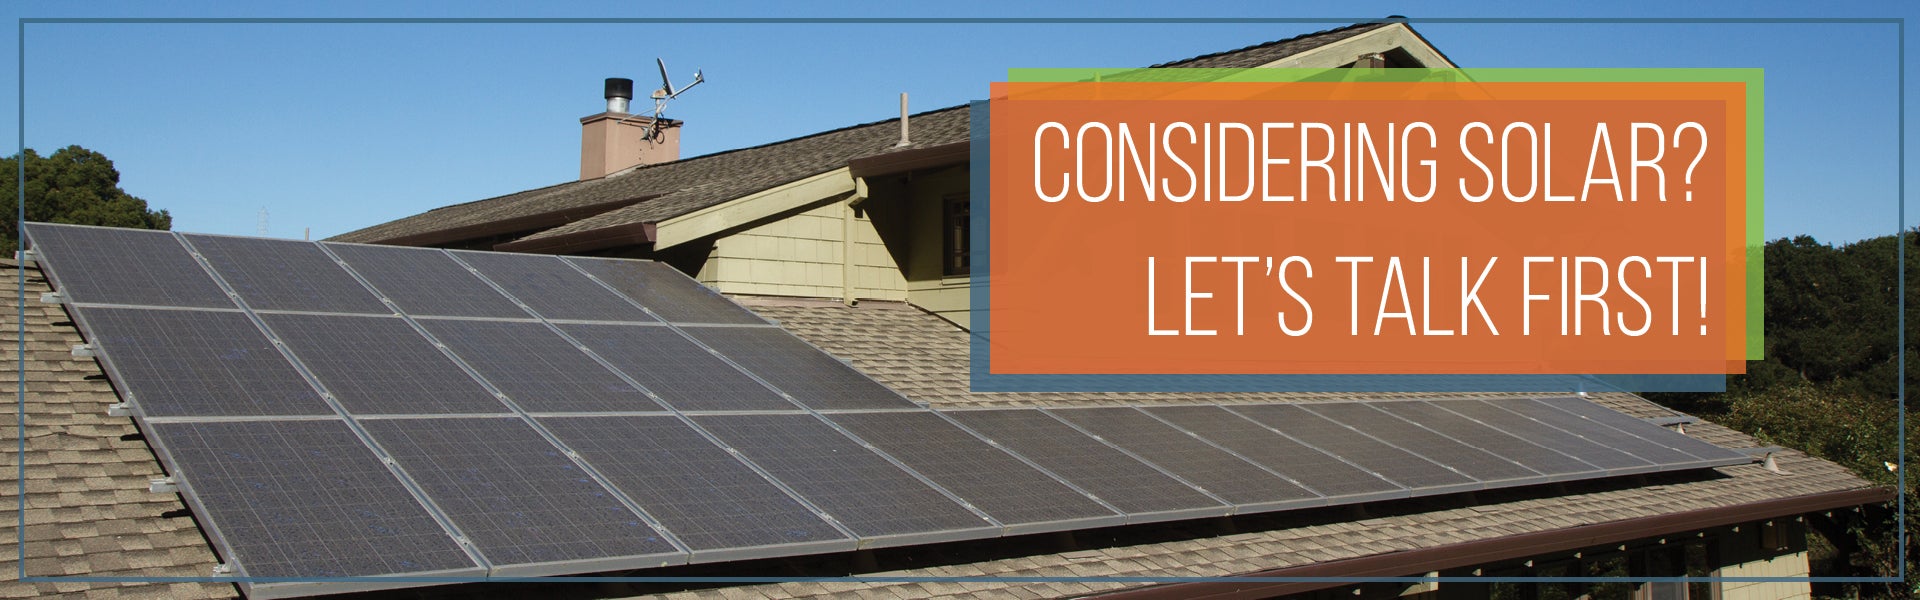 Considering solar? Let's talk first!